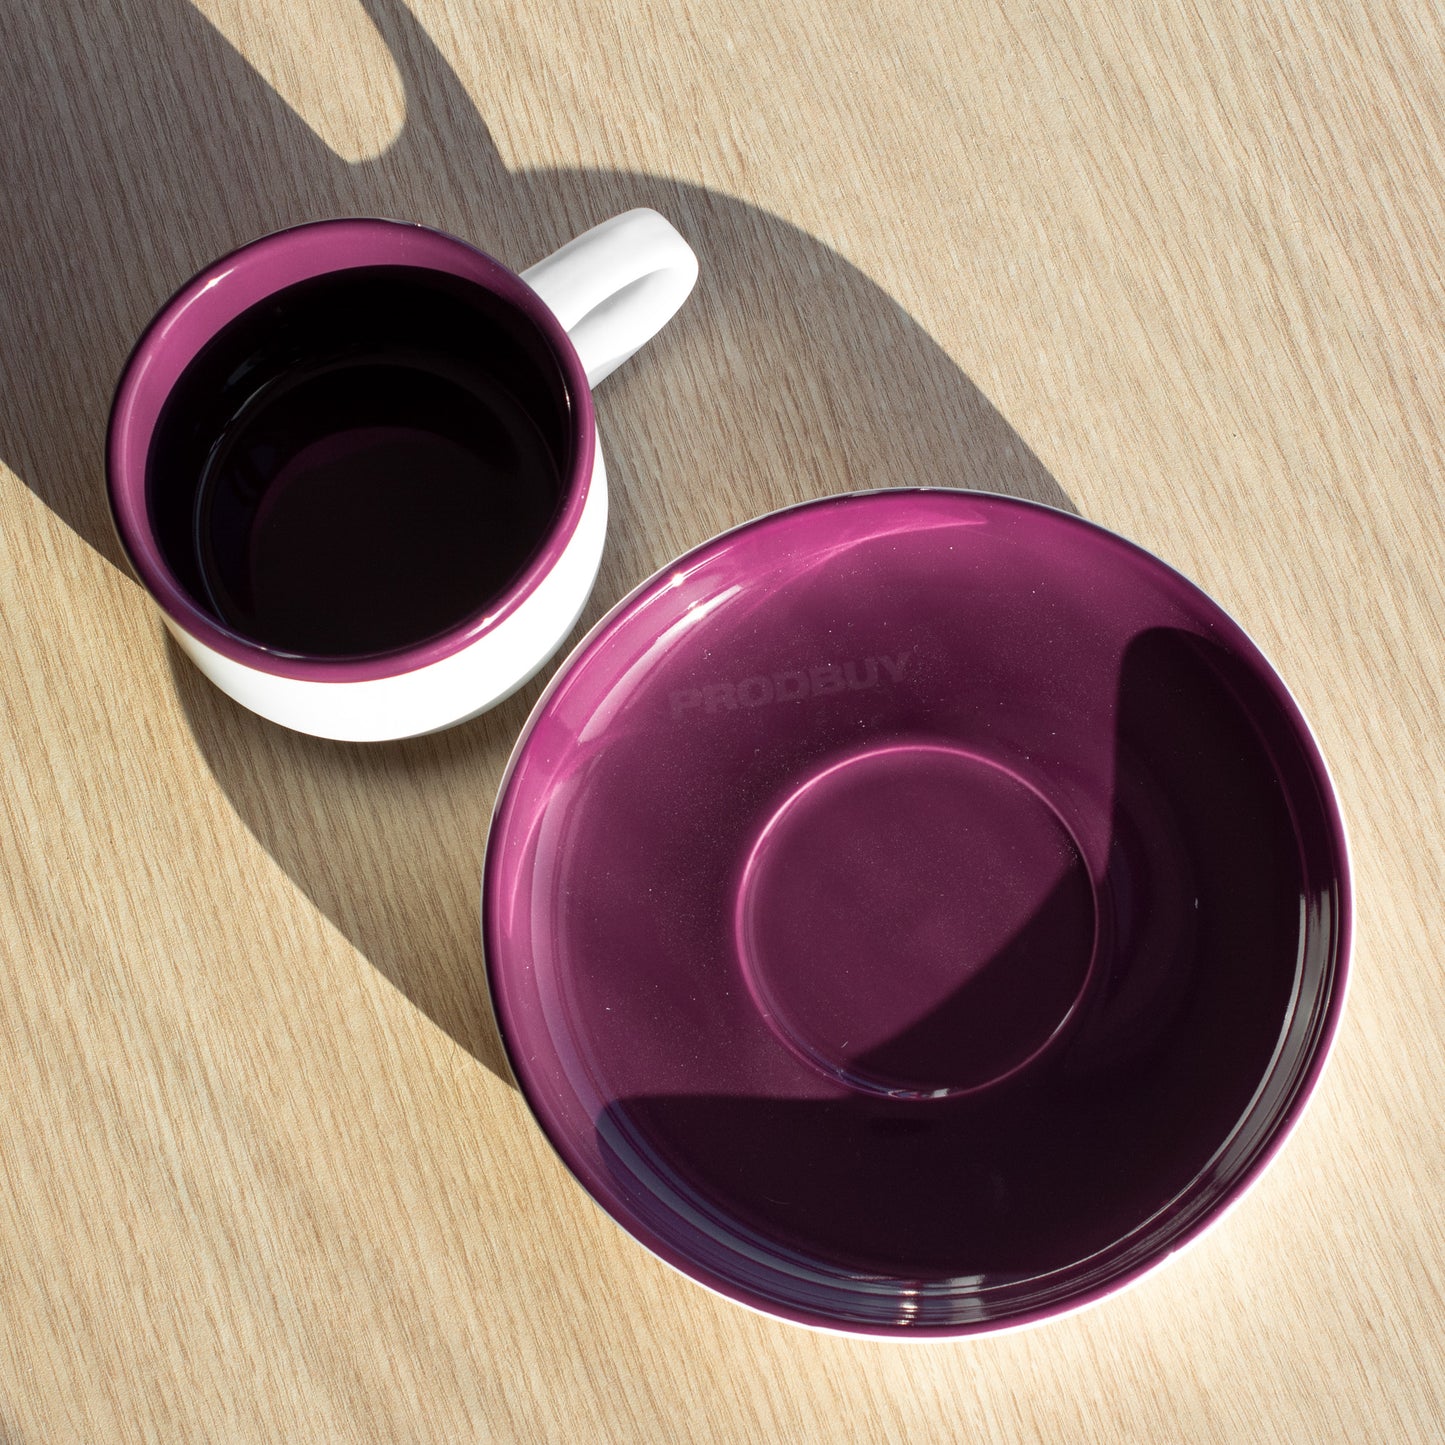 Purple & White La Cafetière Tea Cup & Saucer Set